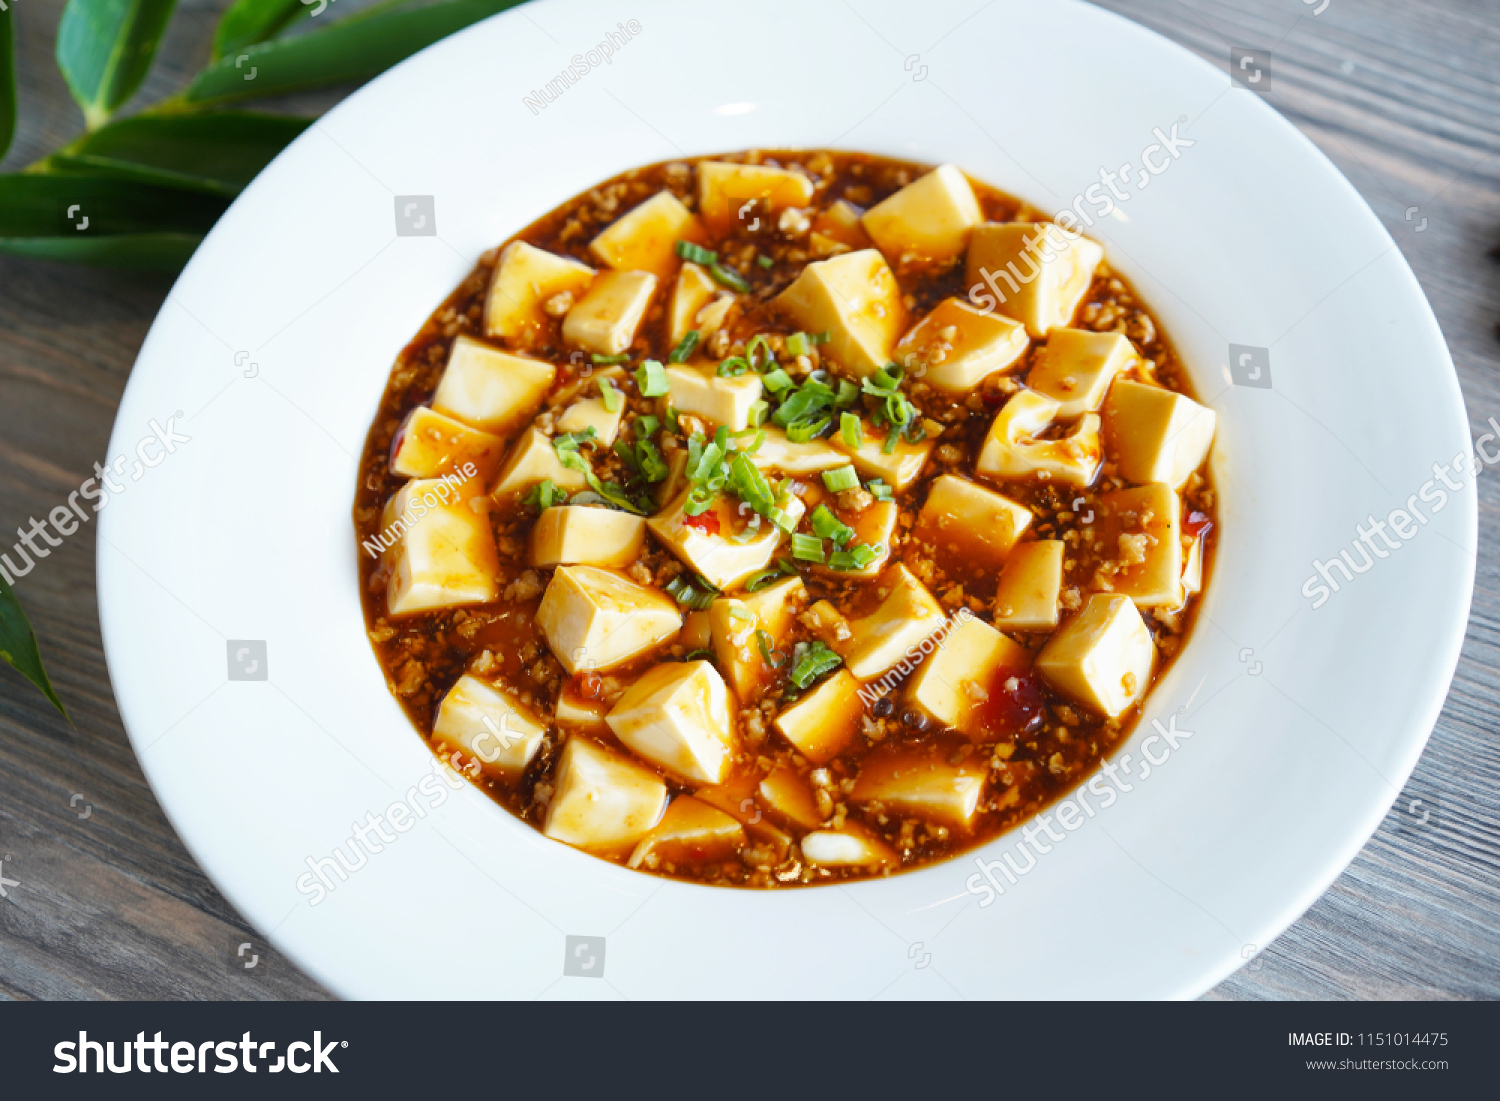 Mapo Tofu, Sichuan Tofu on a plate. Hong Kong cuisine, Chinese cuisine, Macao cuisine, Asian cuisine. Spicy tofu, chilli tofu. Restaurant menu.    #1151014475